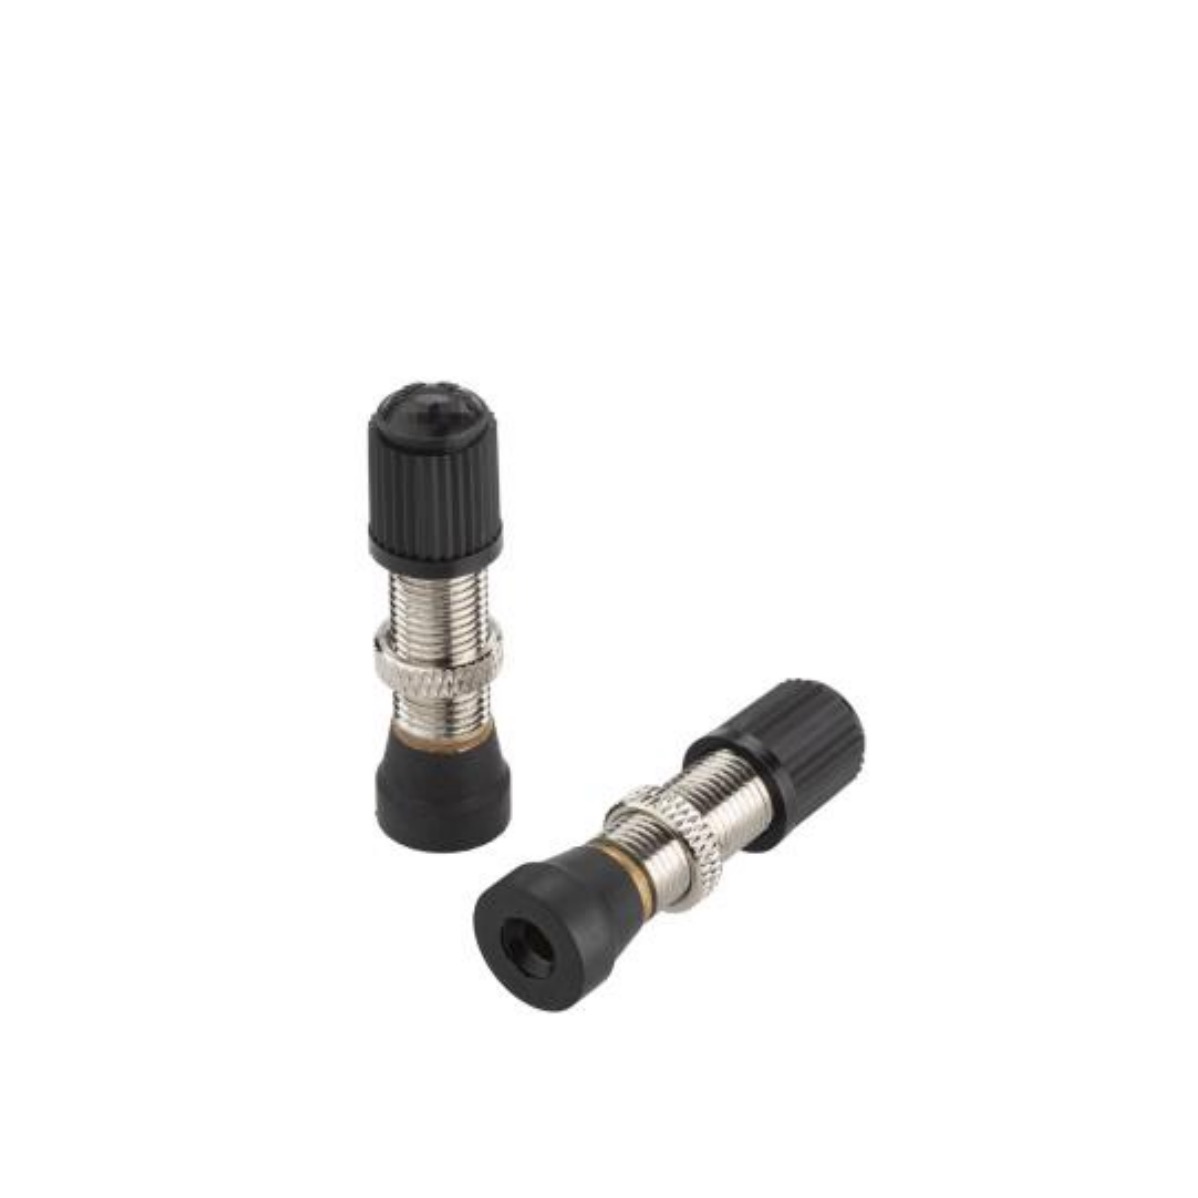 Schrader brass valve 